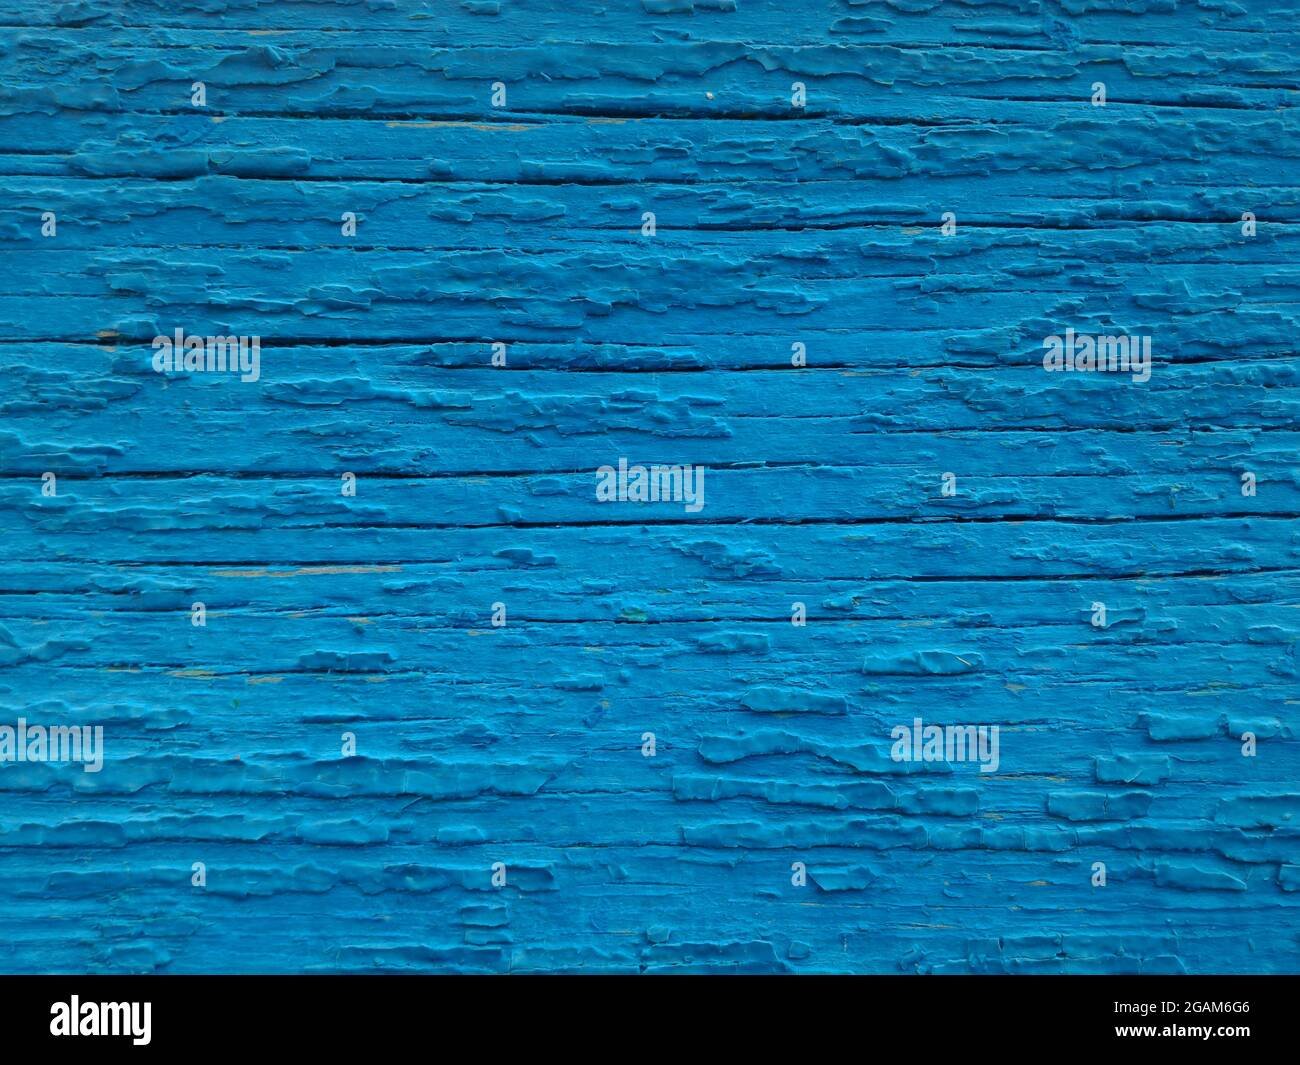 Textur der alten Farbe auf der Holzoberfläche. Hintergrund von gesprungener blauer Farbe, Nahaufnahme Stockfoto